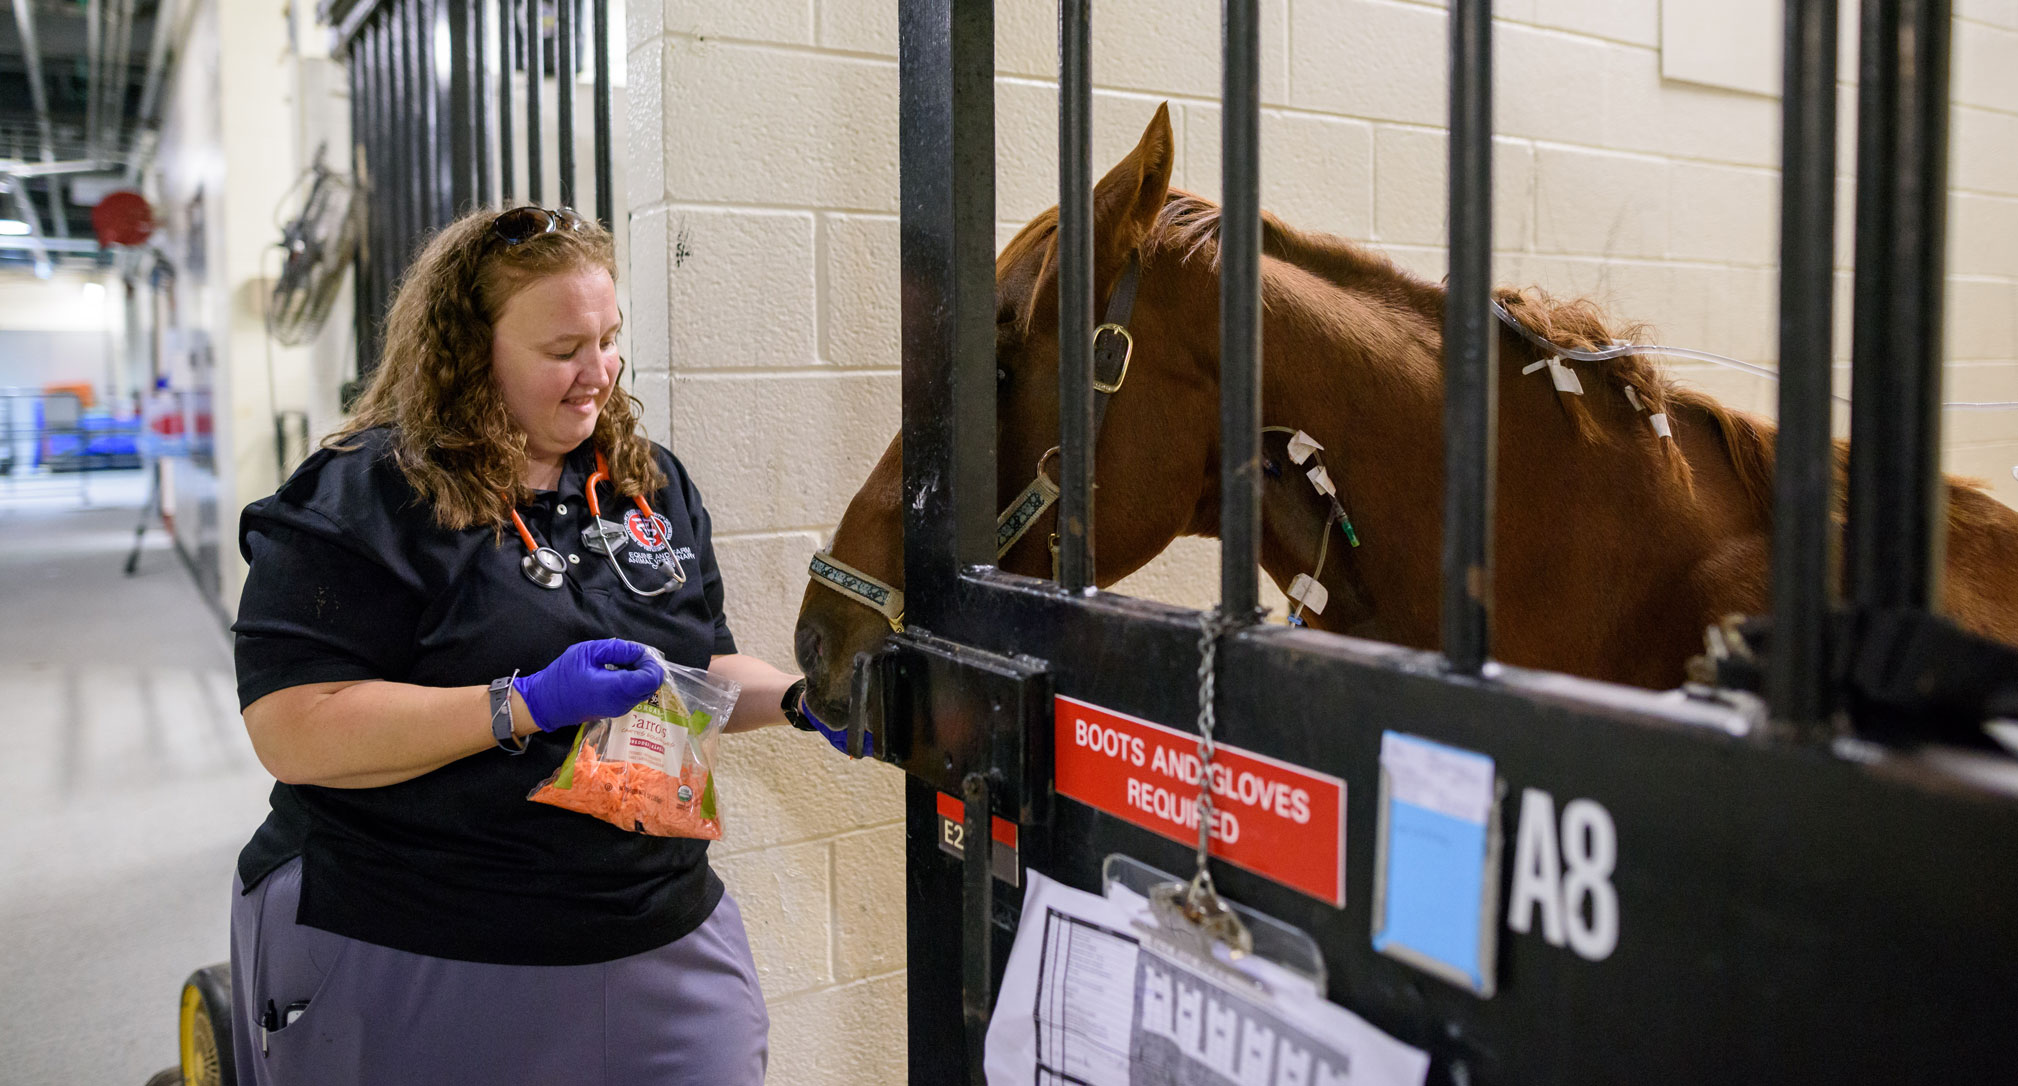 Heather Hopkinson feeding horse carrots